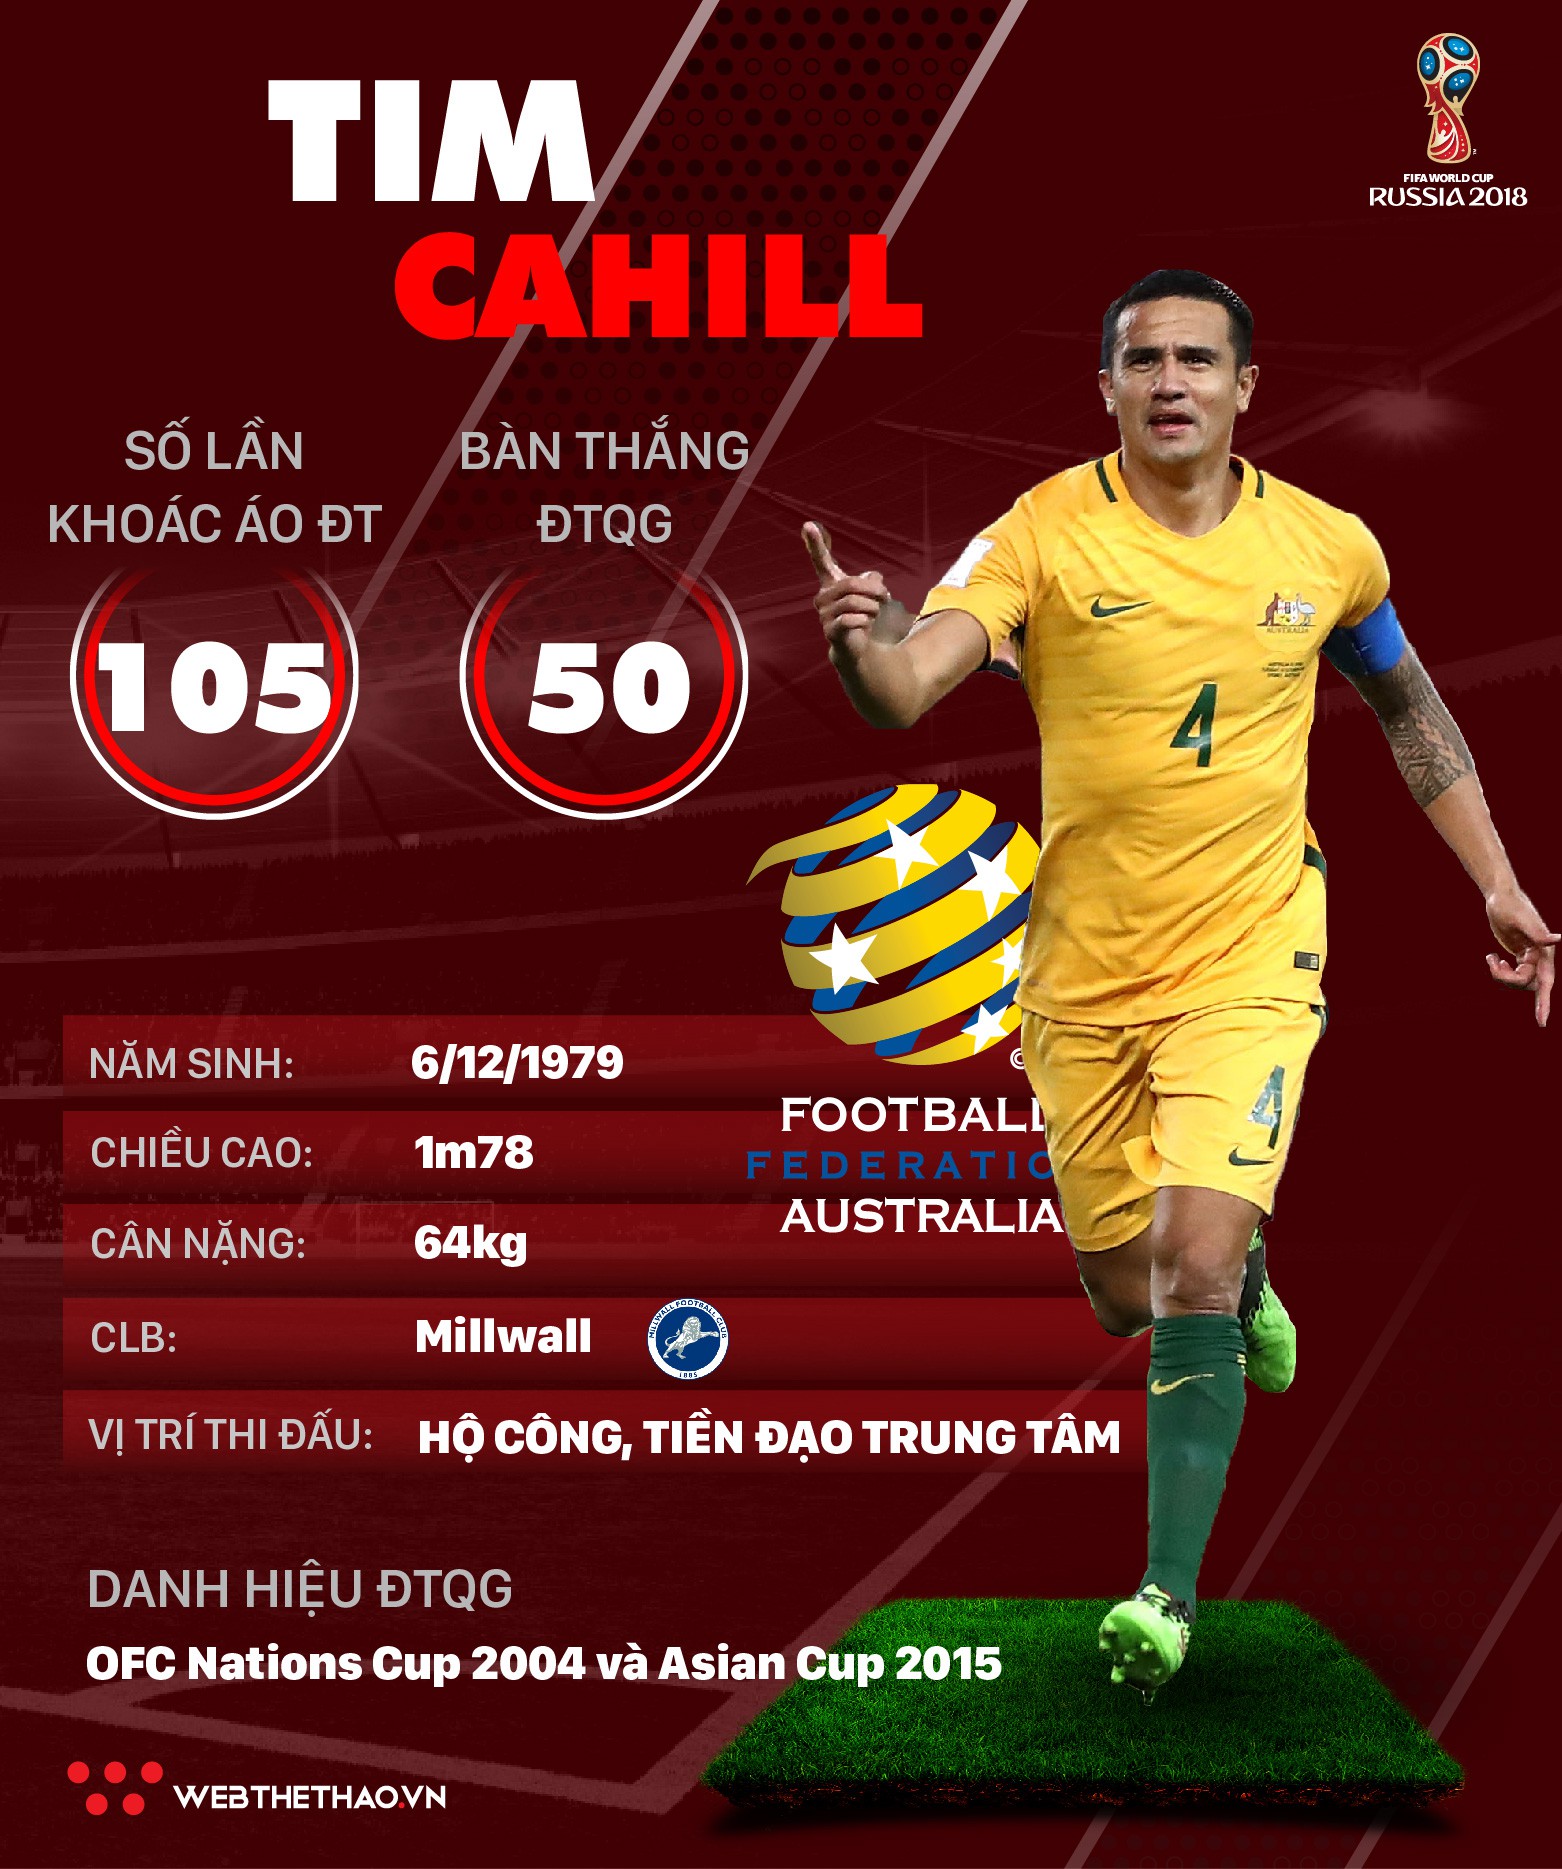 Thông tin cầu thủ Tim Cahill của ĐT Australia dự World Cup 2018 - Ảnh 1.